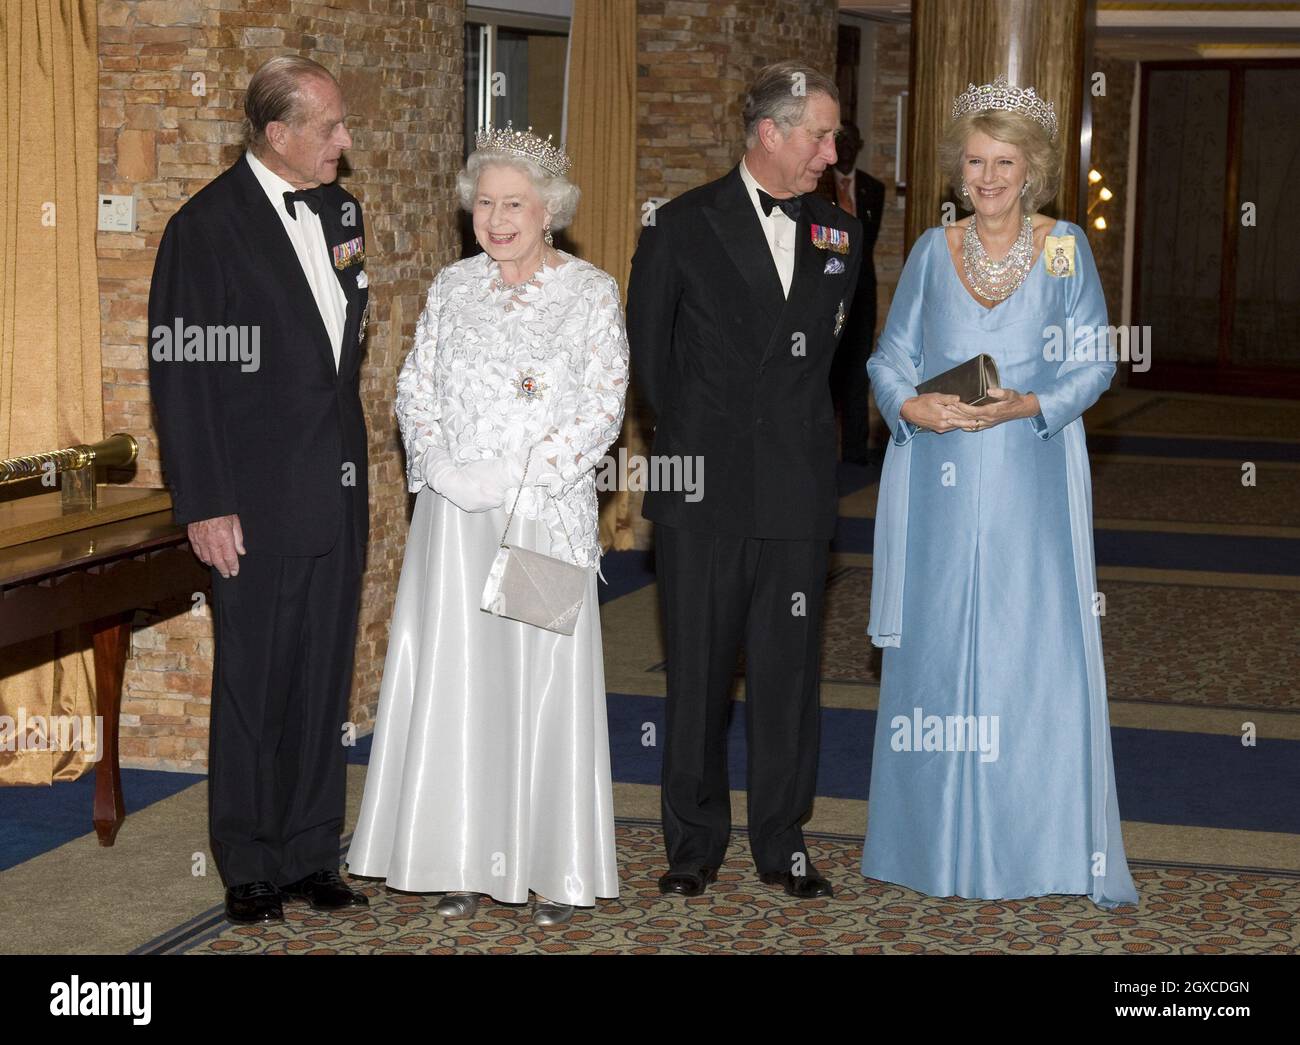 La reine Elizabeth ll, le prince Philip, duc d'Édimbourg, Camilla, duchesse de Cornouailles et le prince Charles, prince de Galles, assistent au banquet des chefs de gouvernement du Commonwealth à Kampala, en Ouganda Banque D'Images